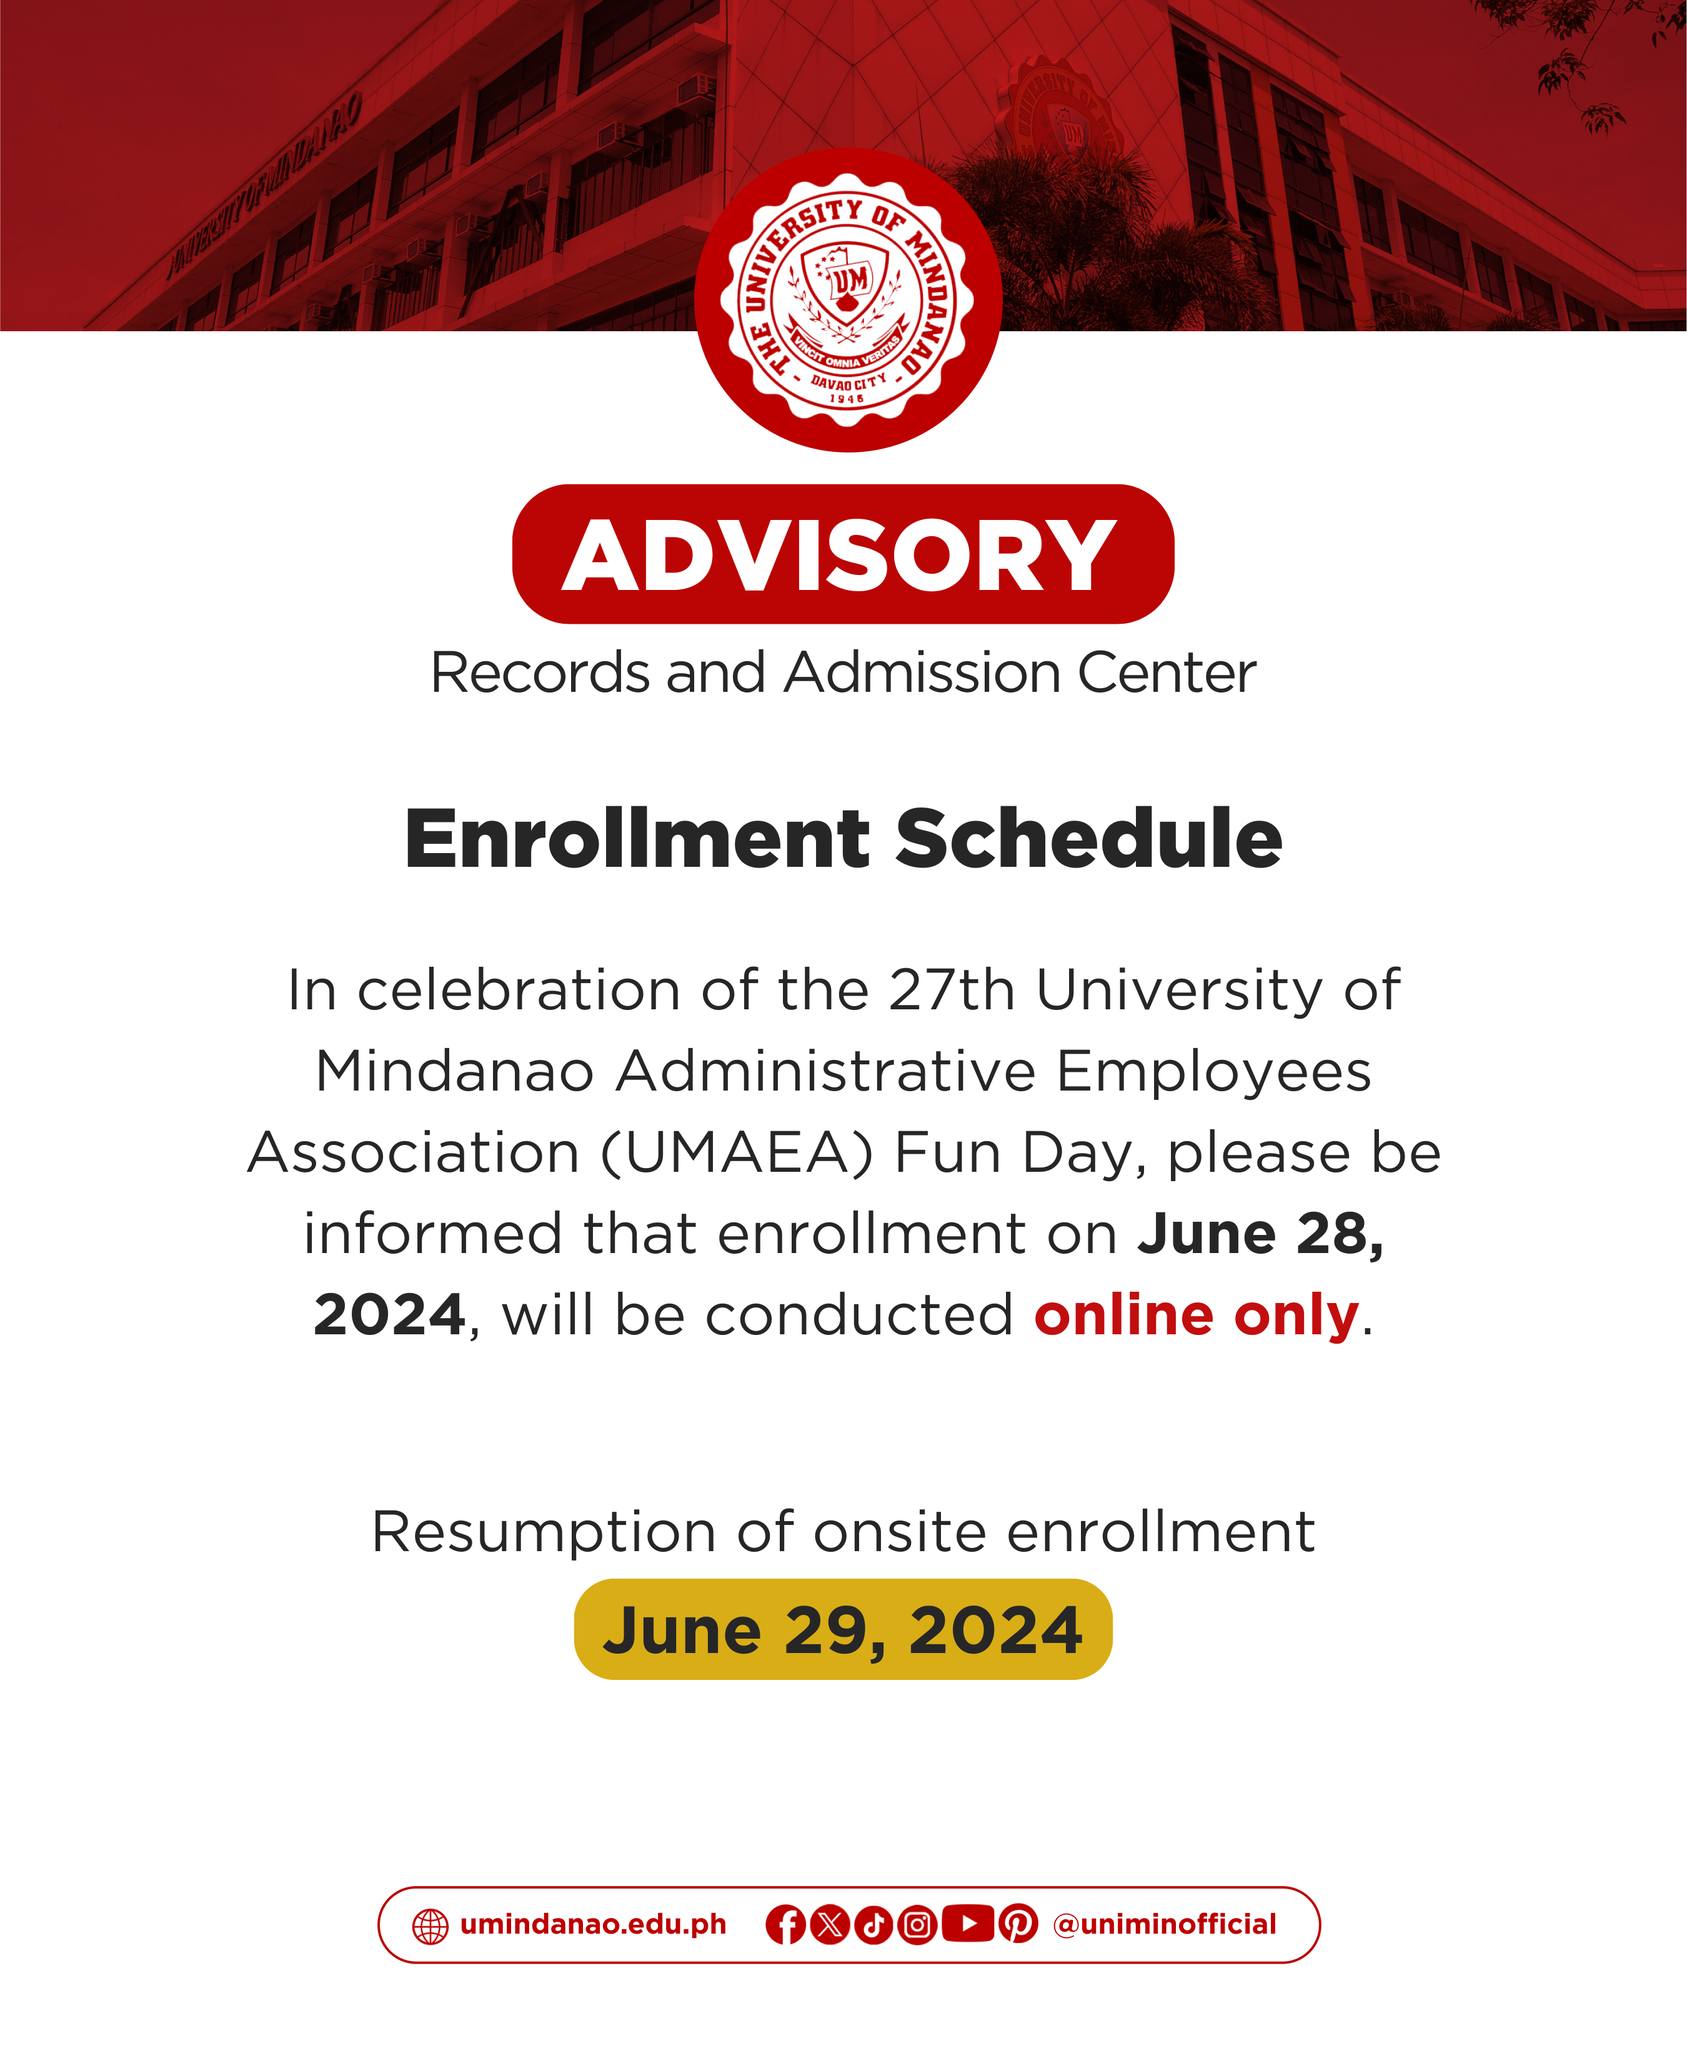 Advisory: Only online enrollment on June 28